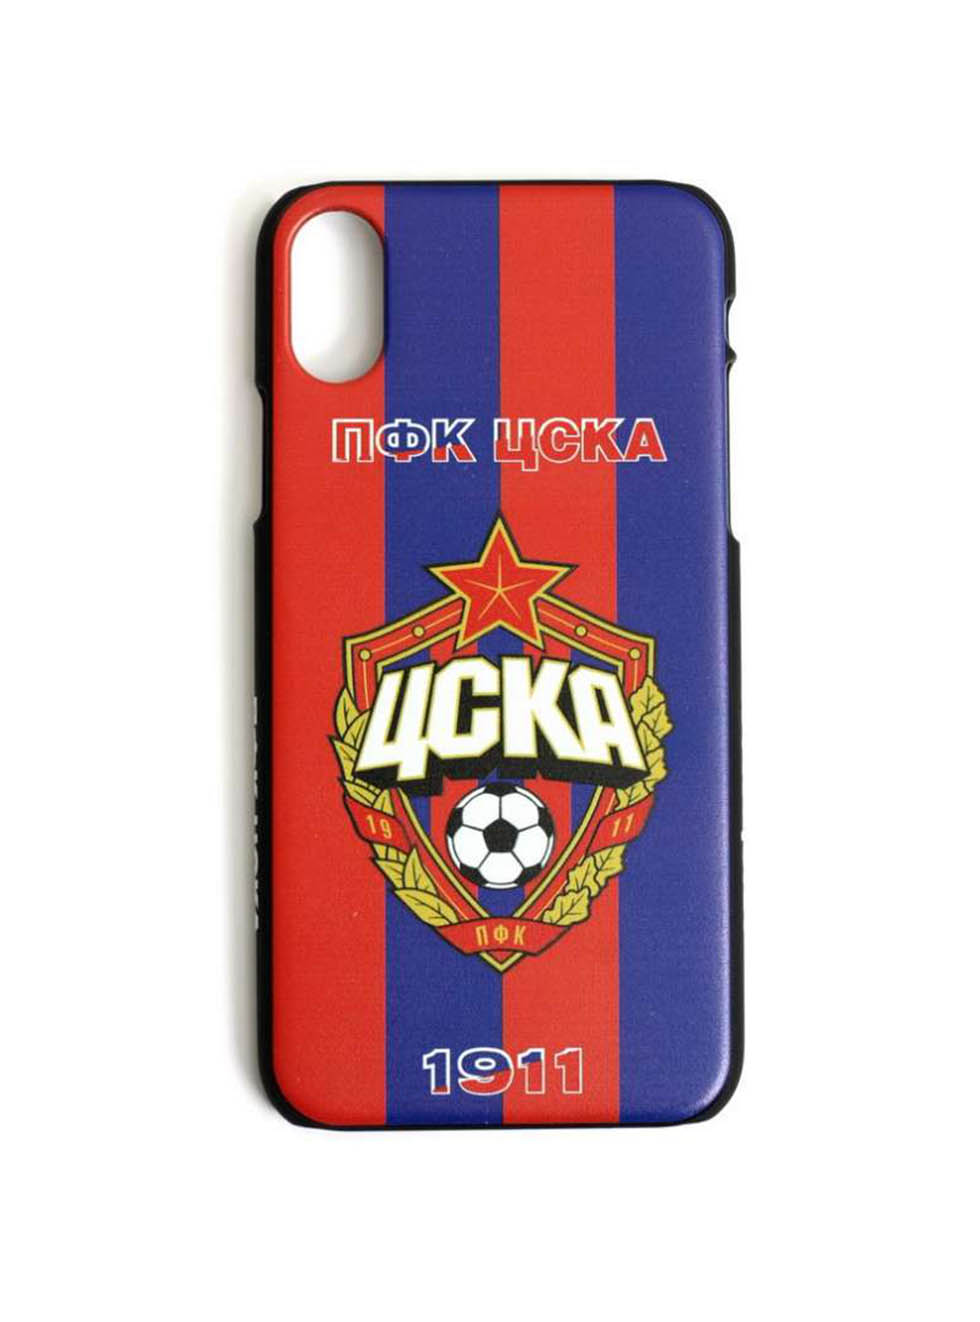 Клип-кейс ПФК ЦСКА 1911 для iPhone, цвет красно-синий (IPhone X)